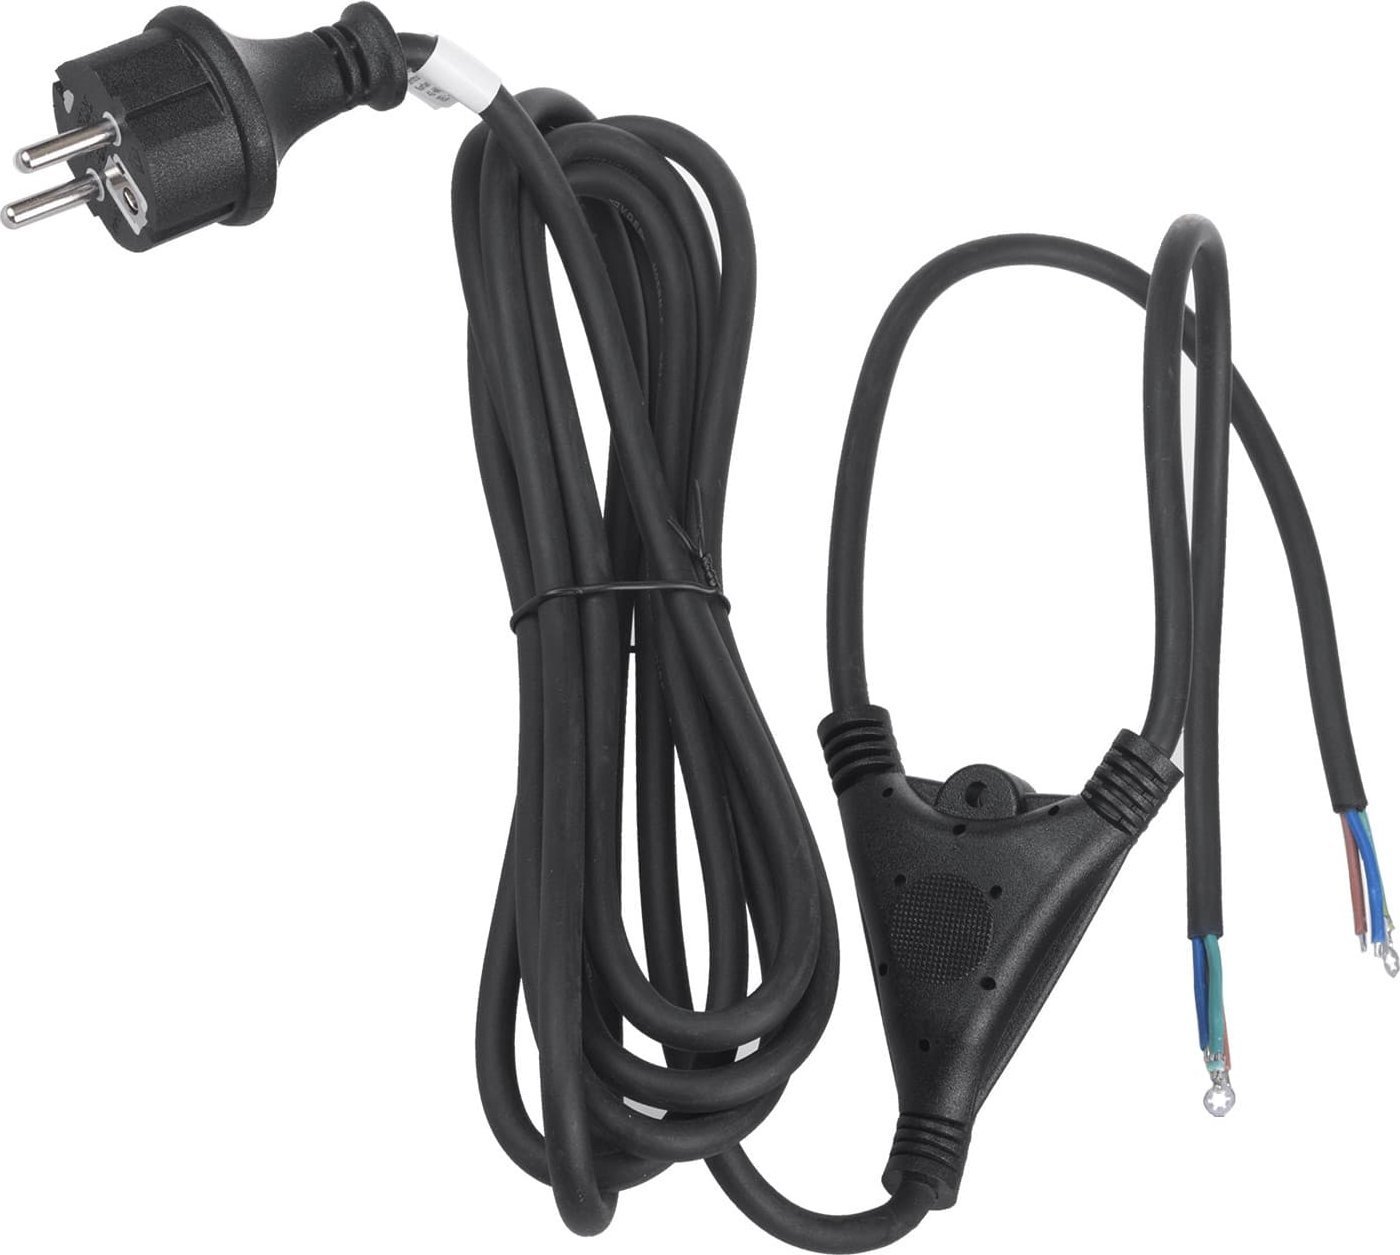 Cablu pentru stativ, 3 m, Maclean MCE585, negru